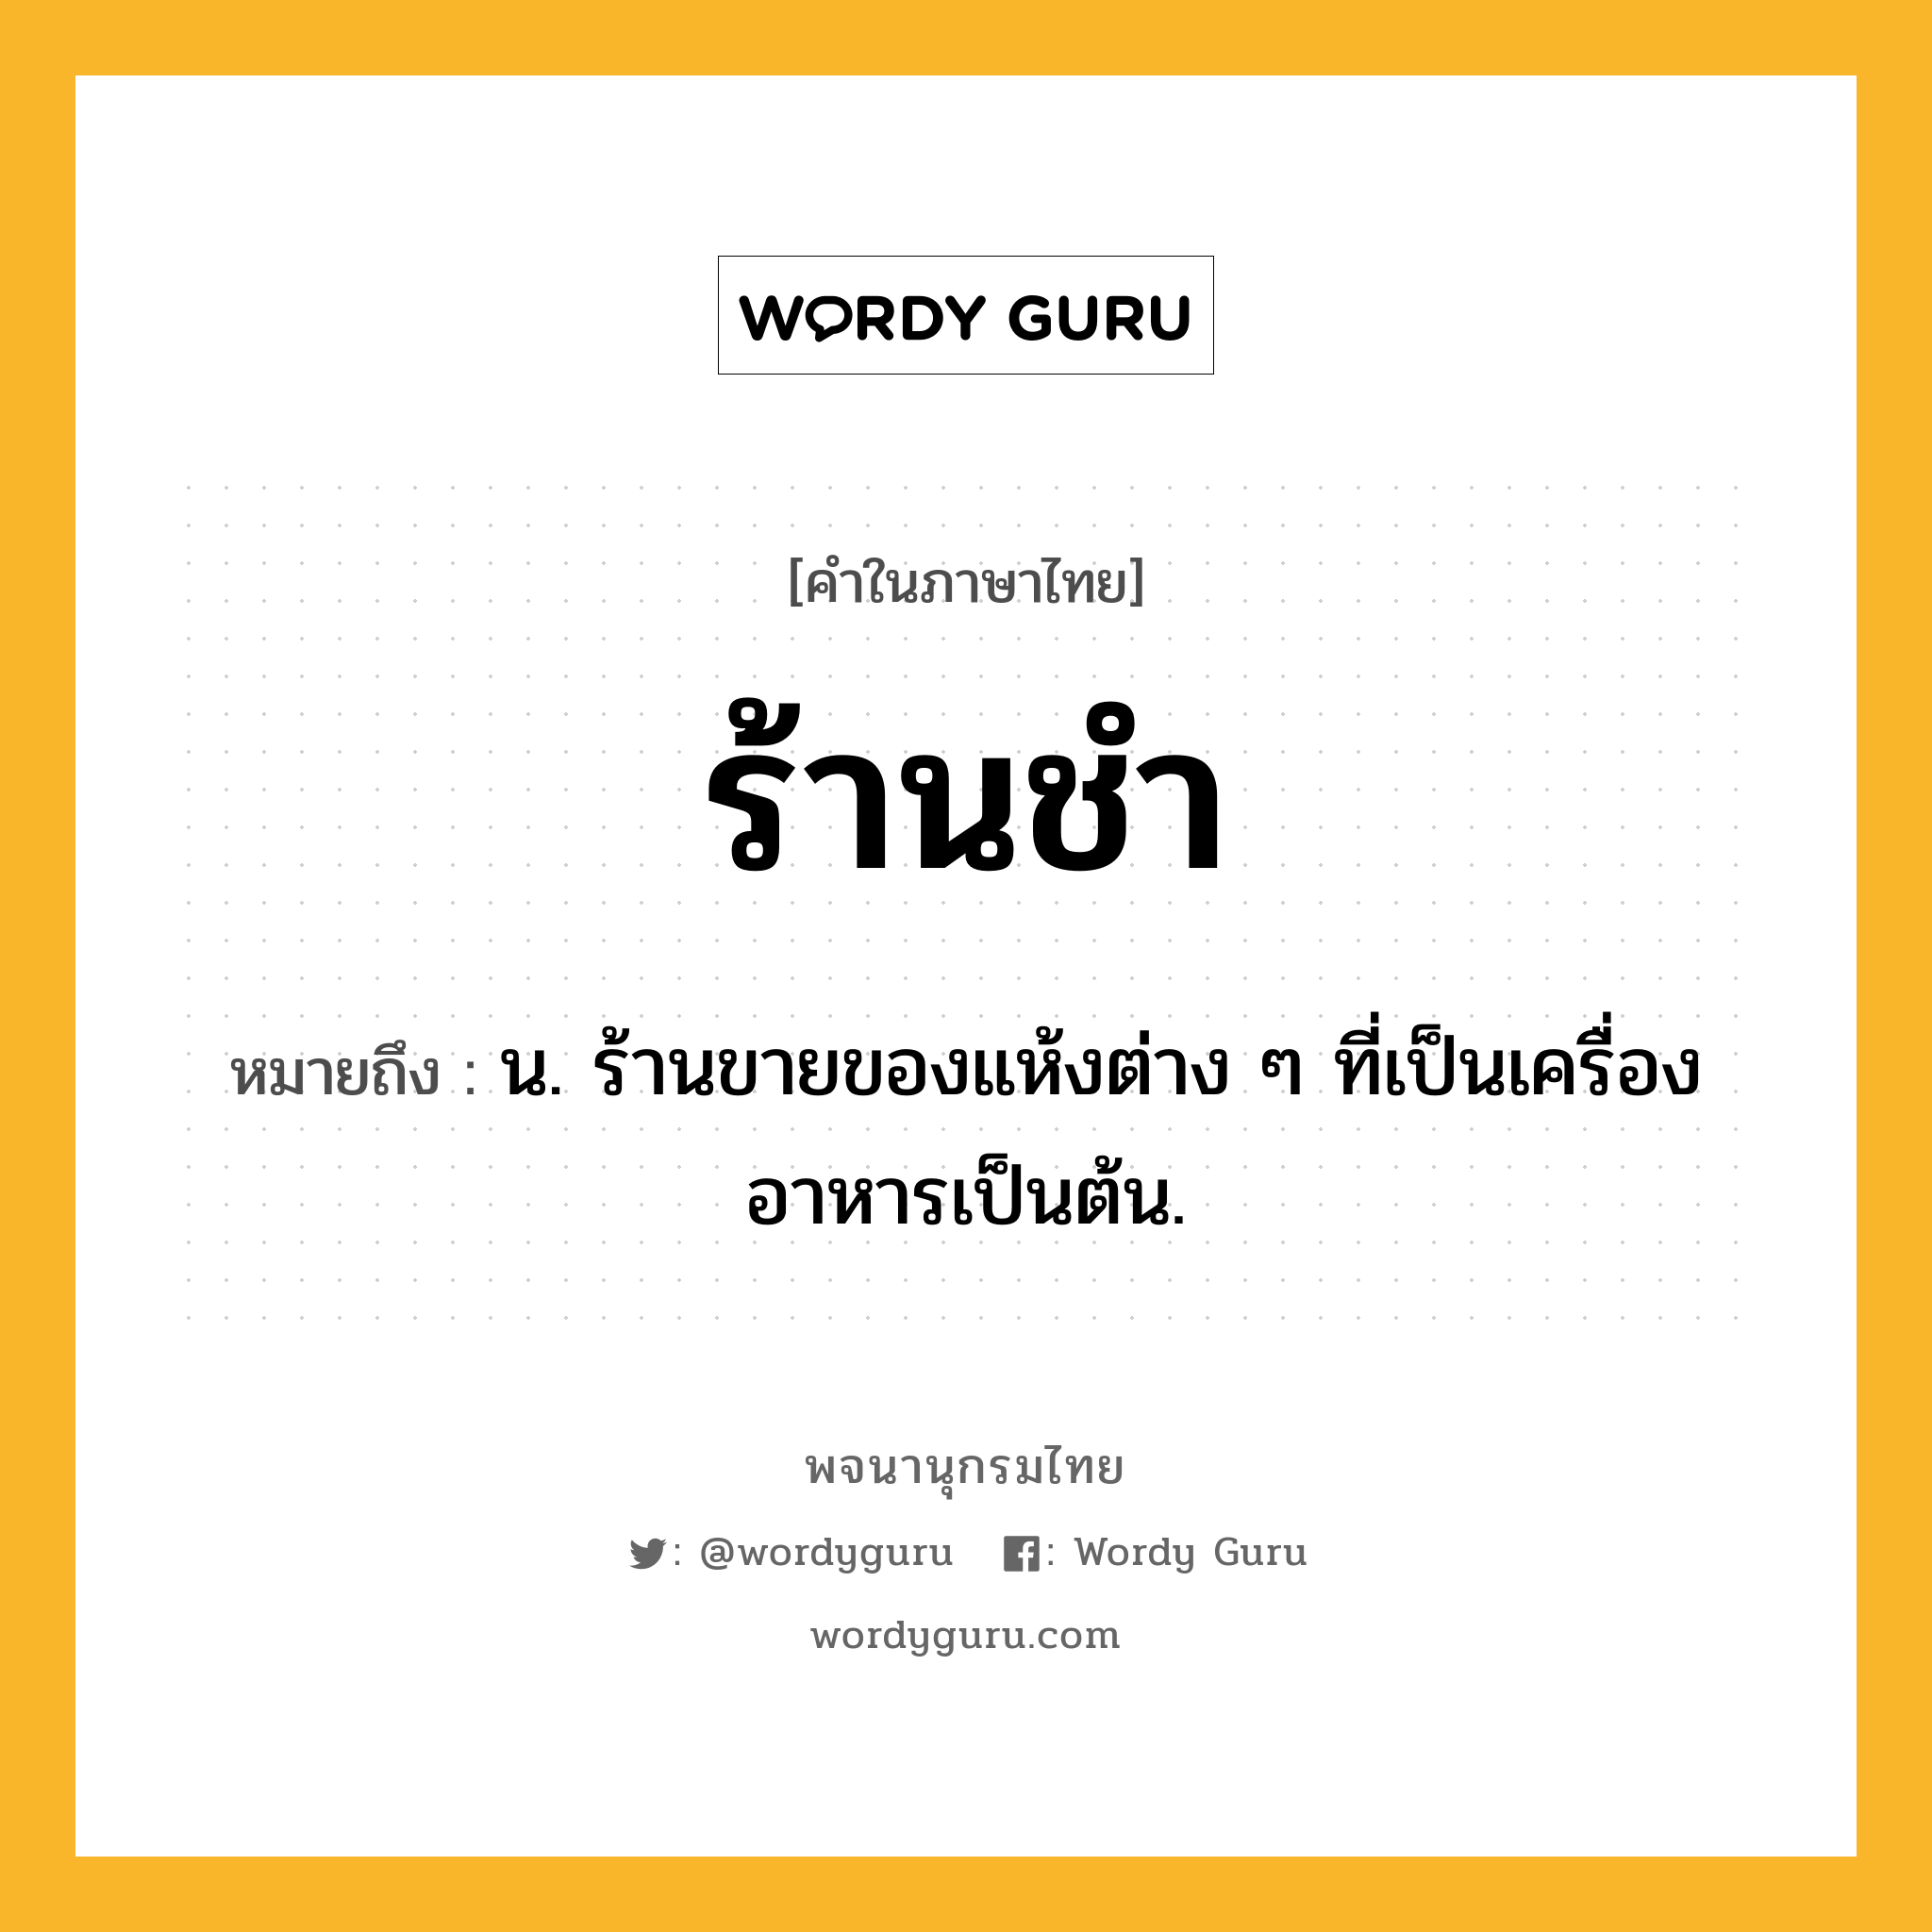 ร้านชำ ความหมาย หมายถึงอะไร?, คำในภาษาไทย ร้านชำ หมายถึง น. ร้านขายของแห้งต่าง ๆ ที่เป็นเครื่องอาหารเป็นต้น.